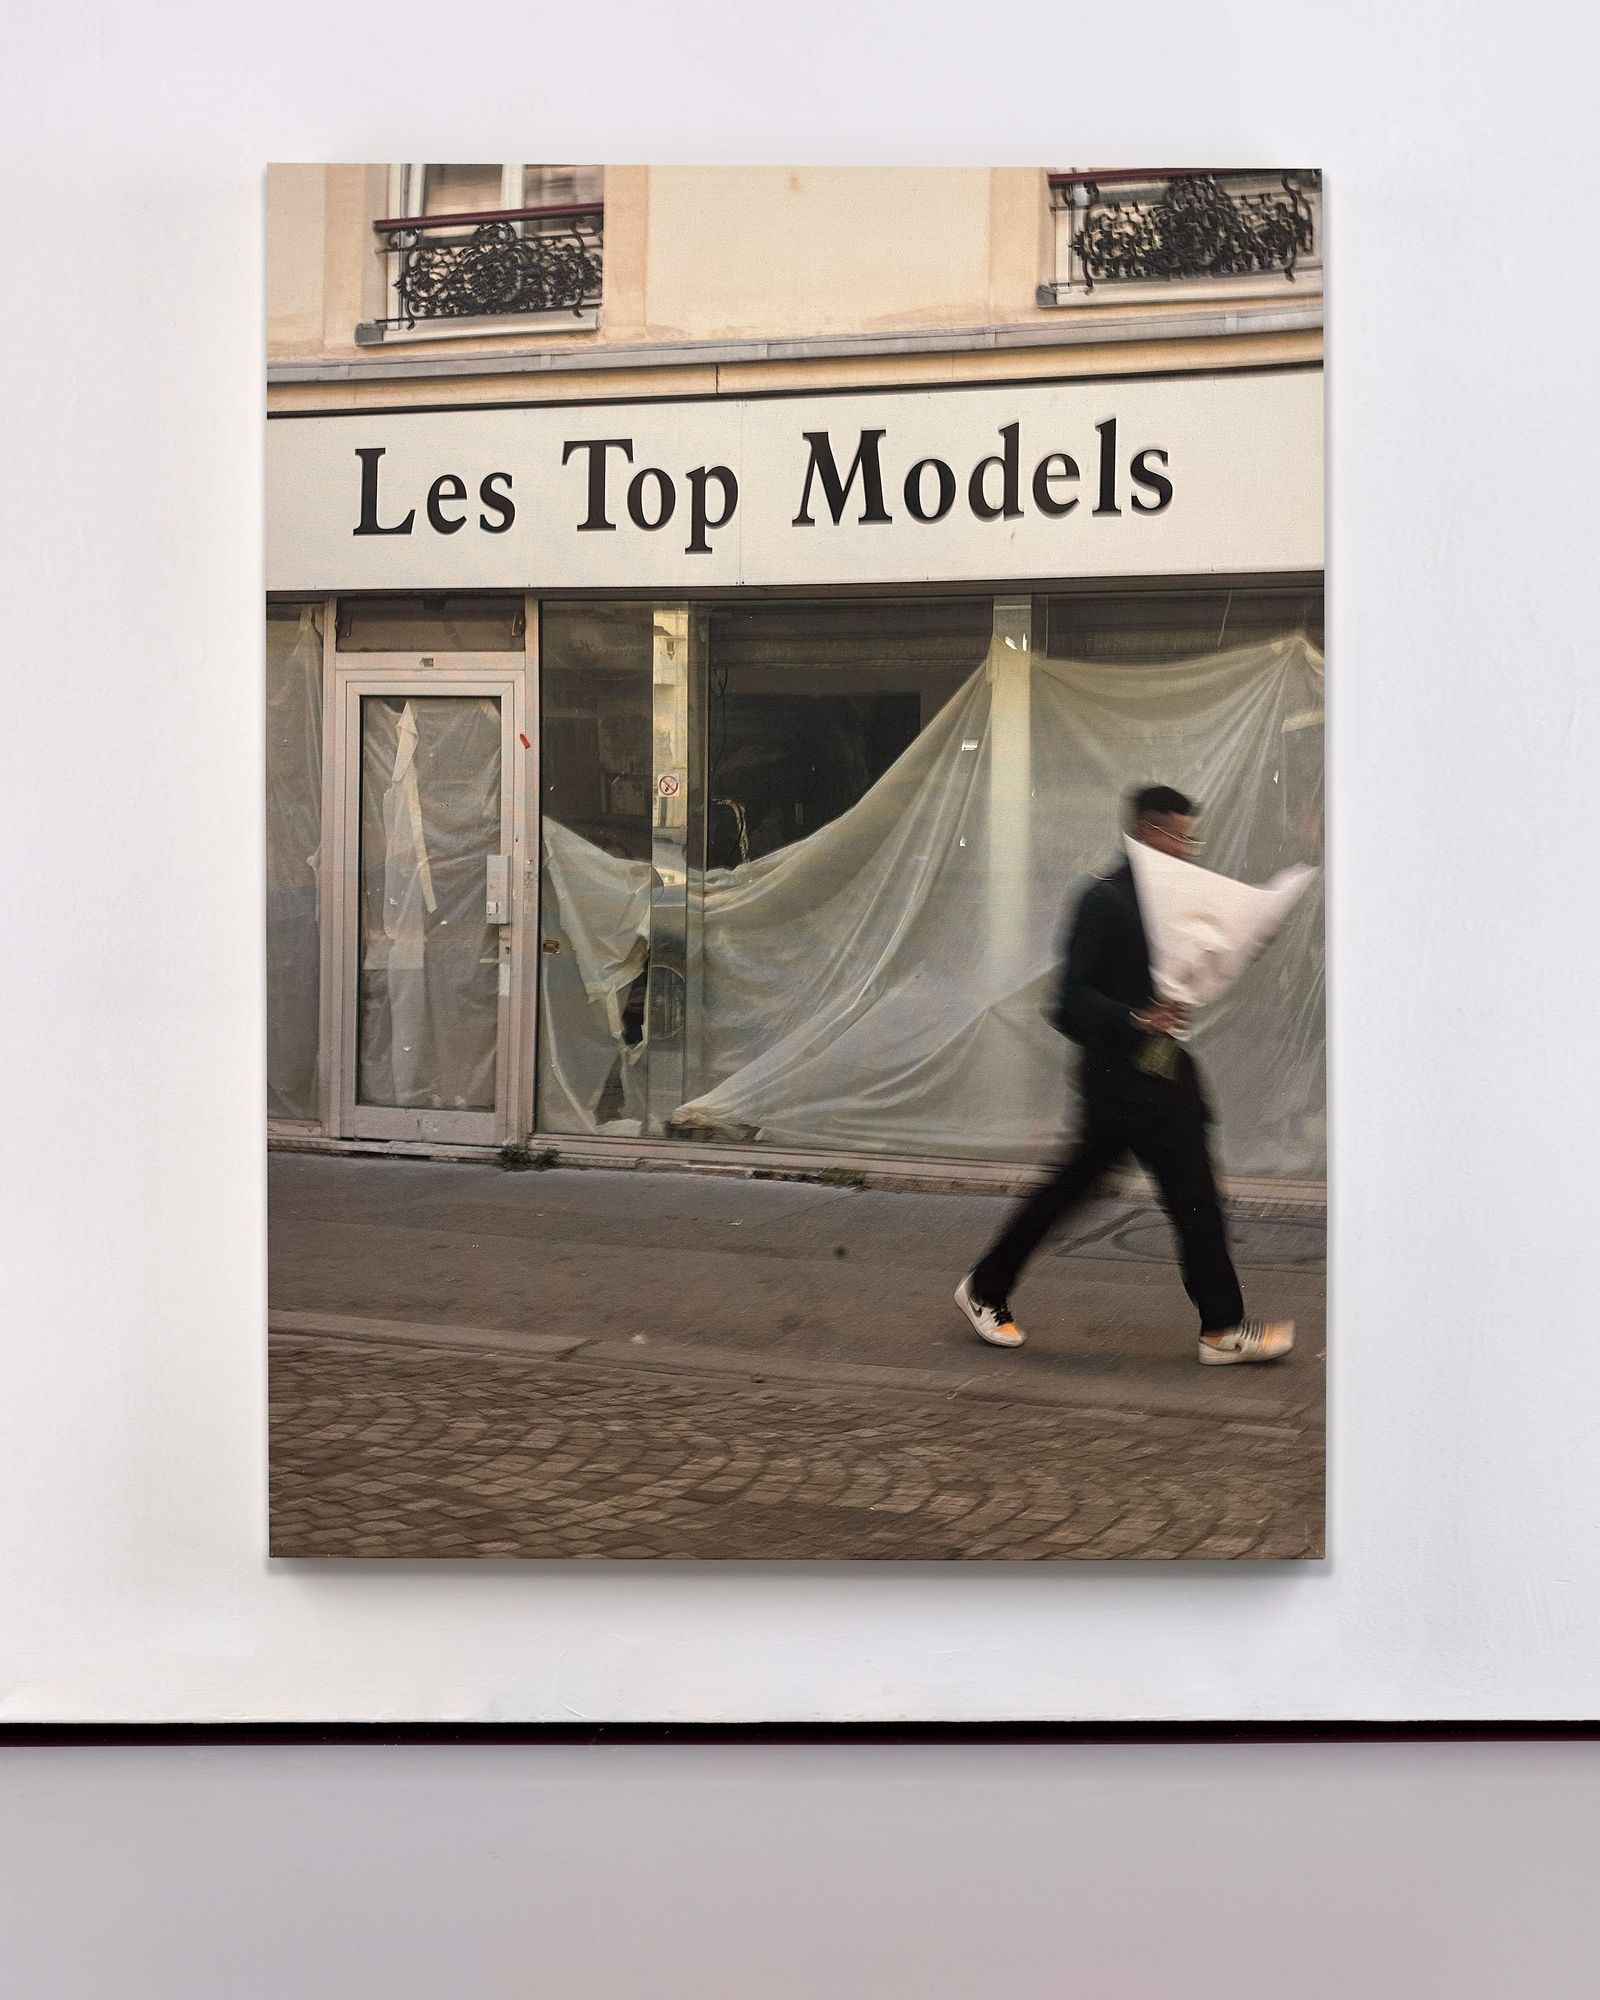 © Luca Massaro - Les Top Models, Paris - Latex on unprimed linen canvas 180x125x5cm